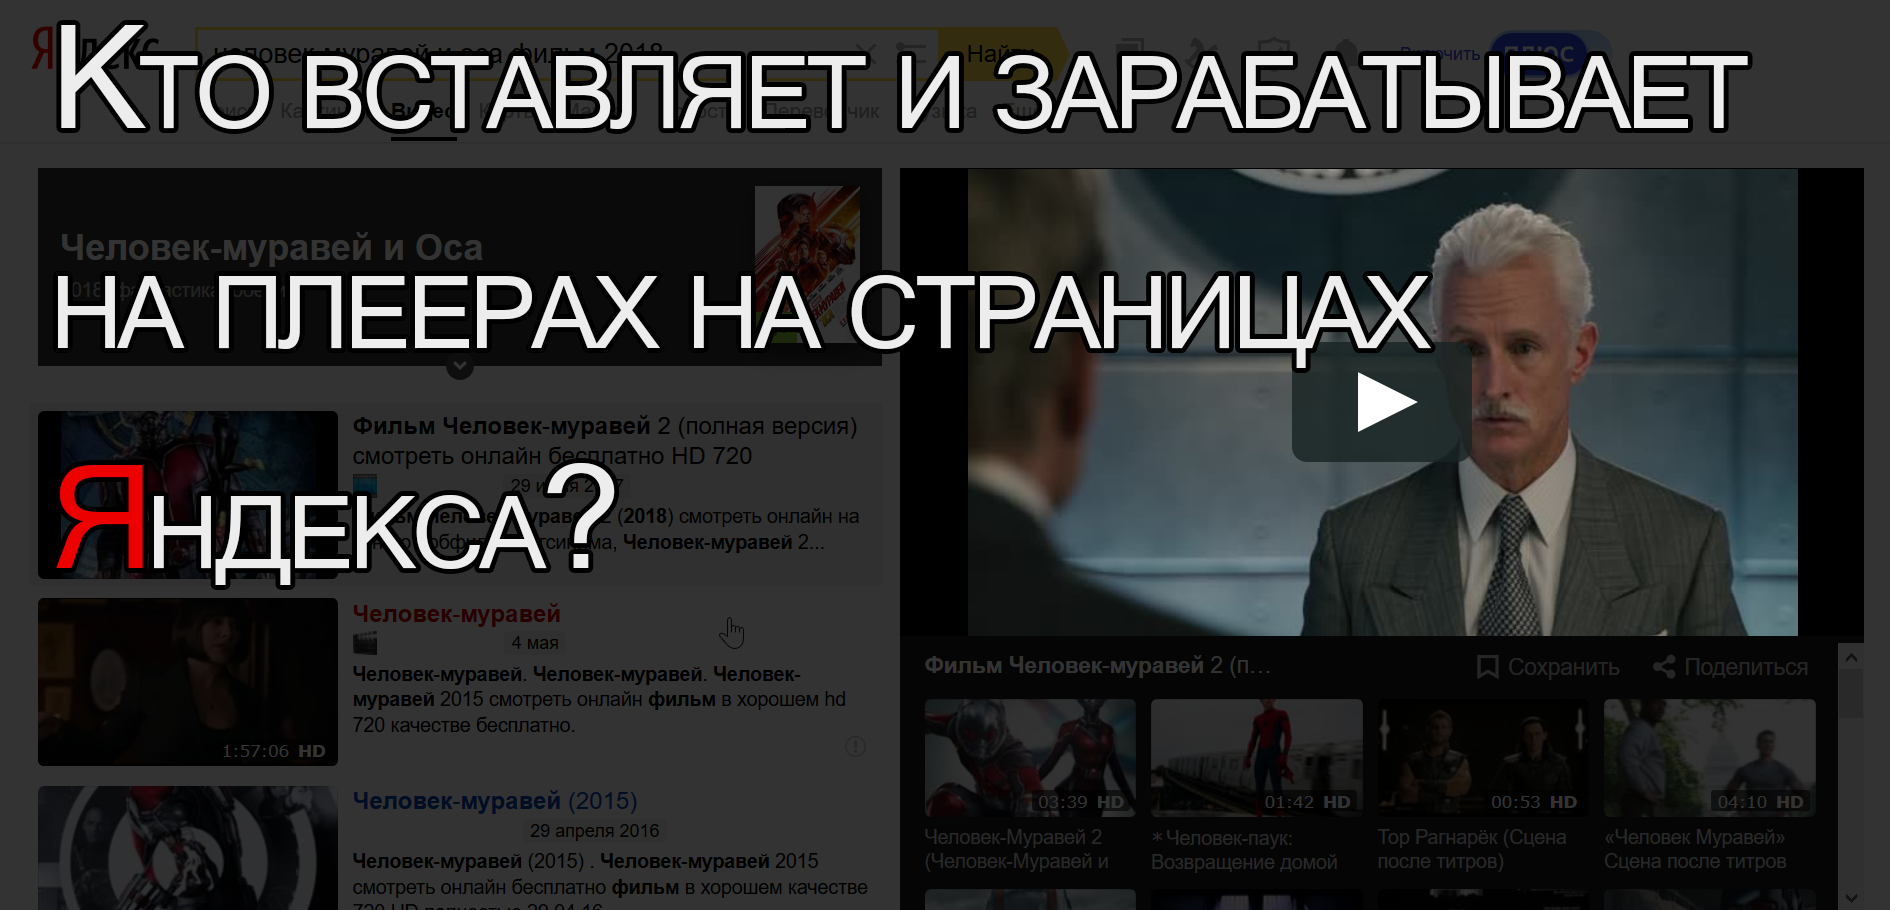 Кто в рунете монополист пиратского видео-контента? - 1